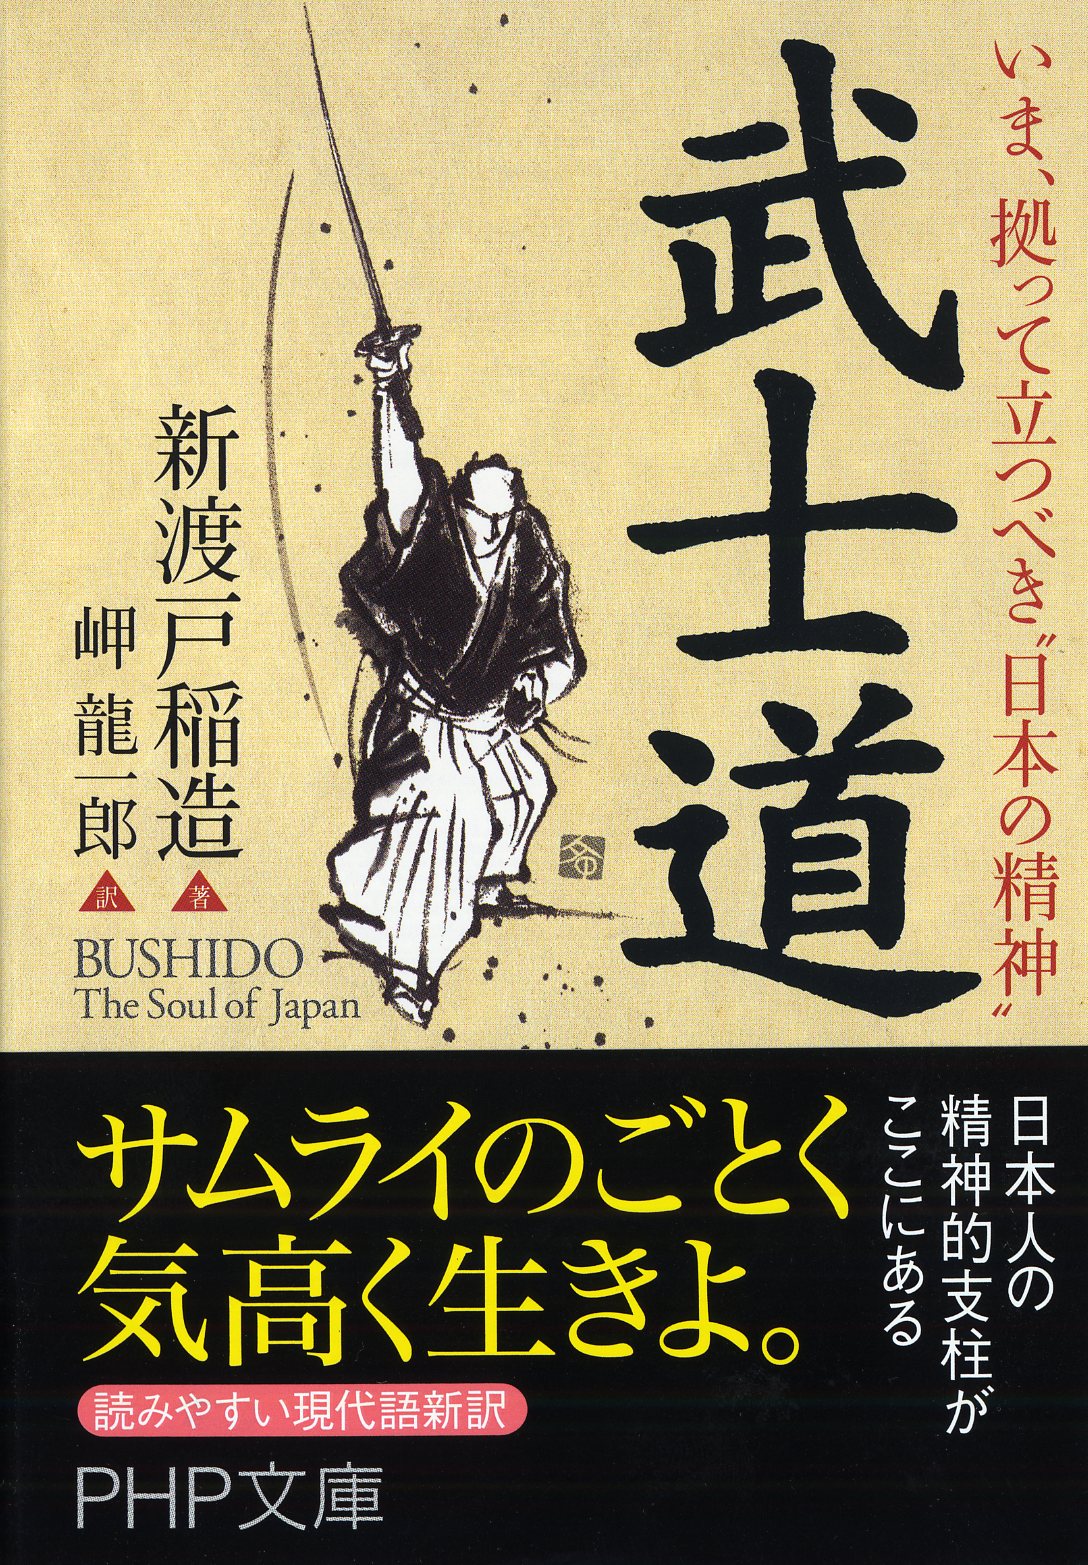 いま、拠って立つべき“日本の精神” 武士道の商品画像